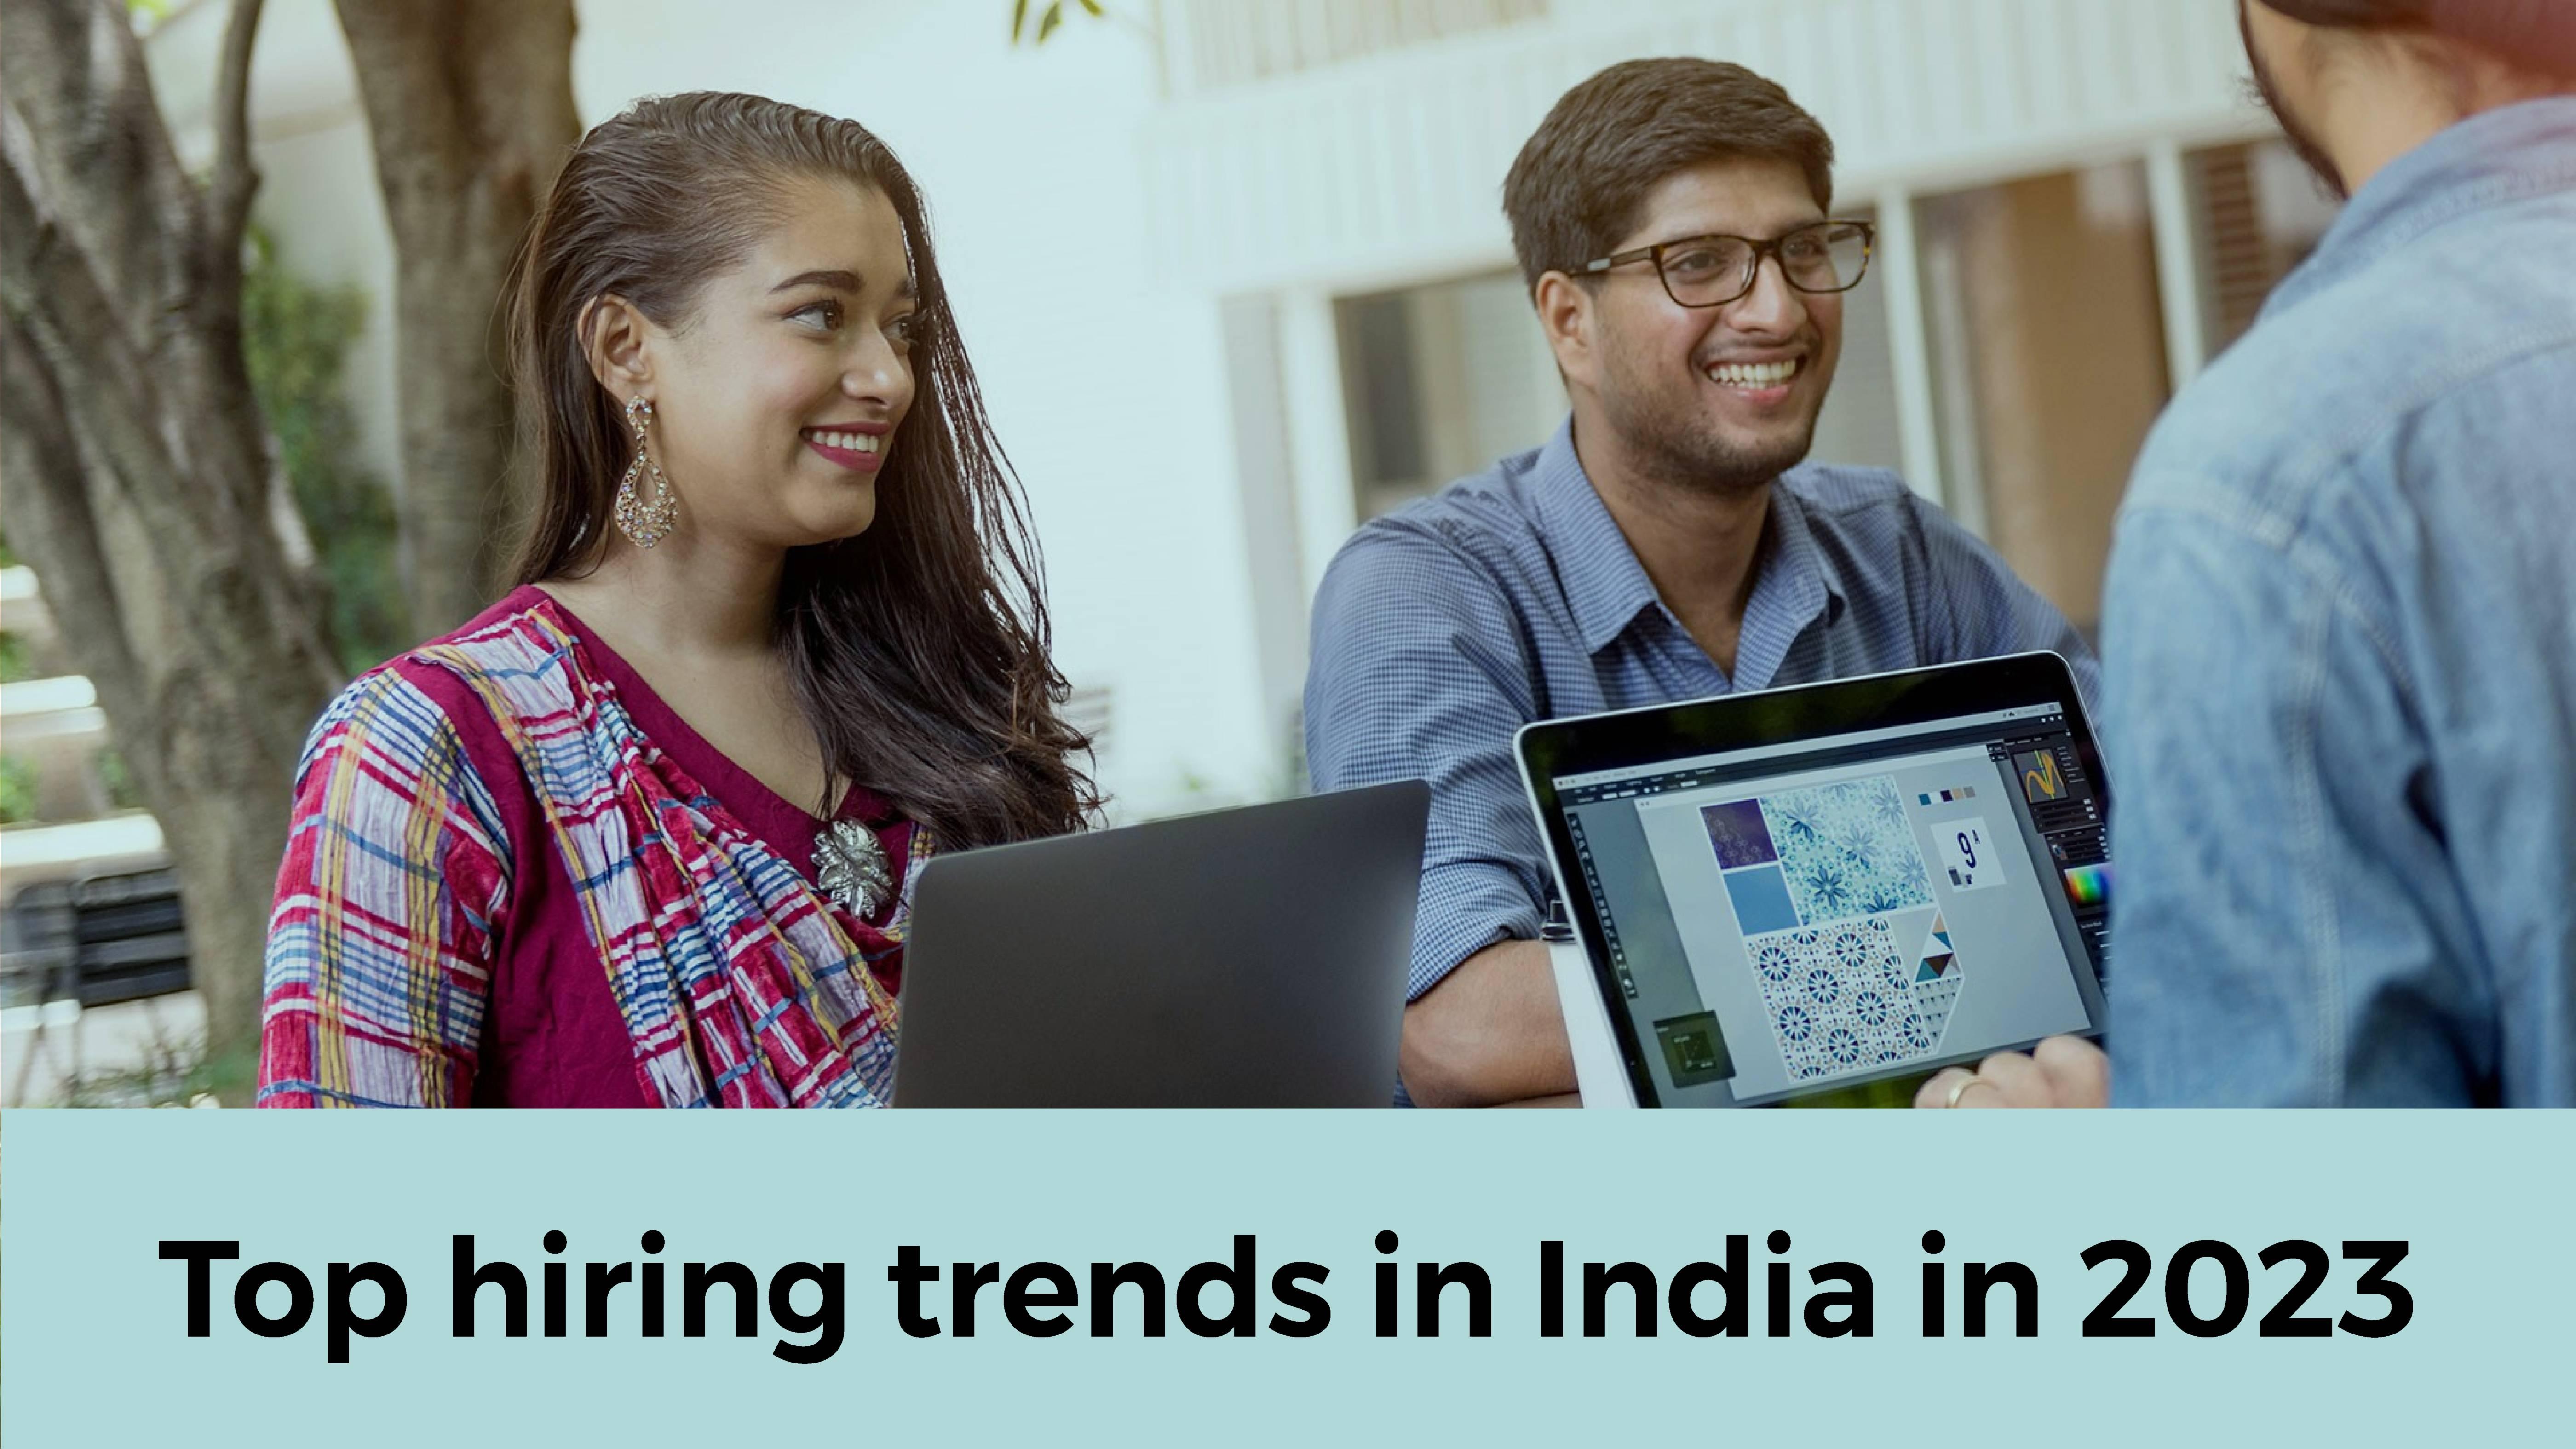 Top hiring trends in India in 2023